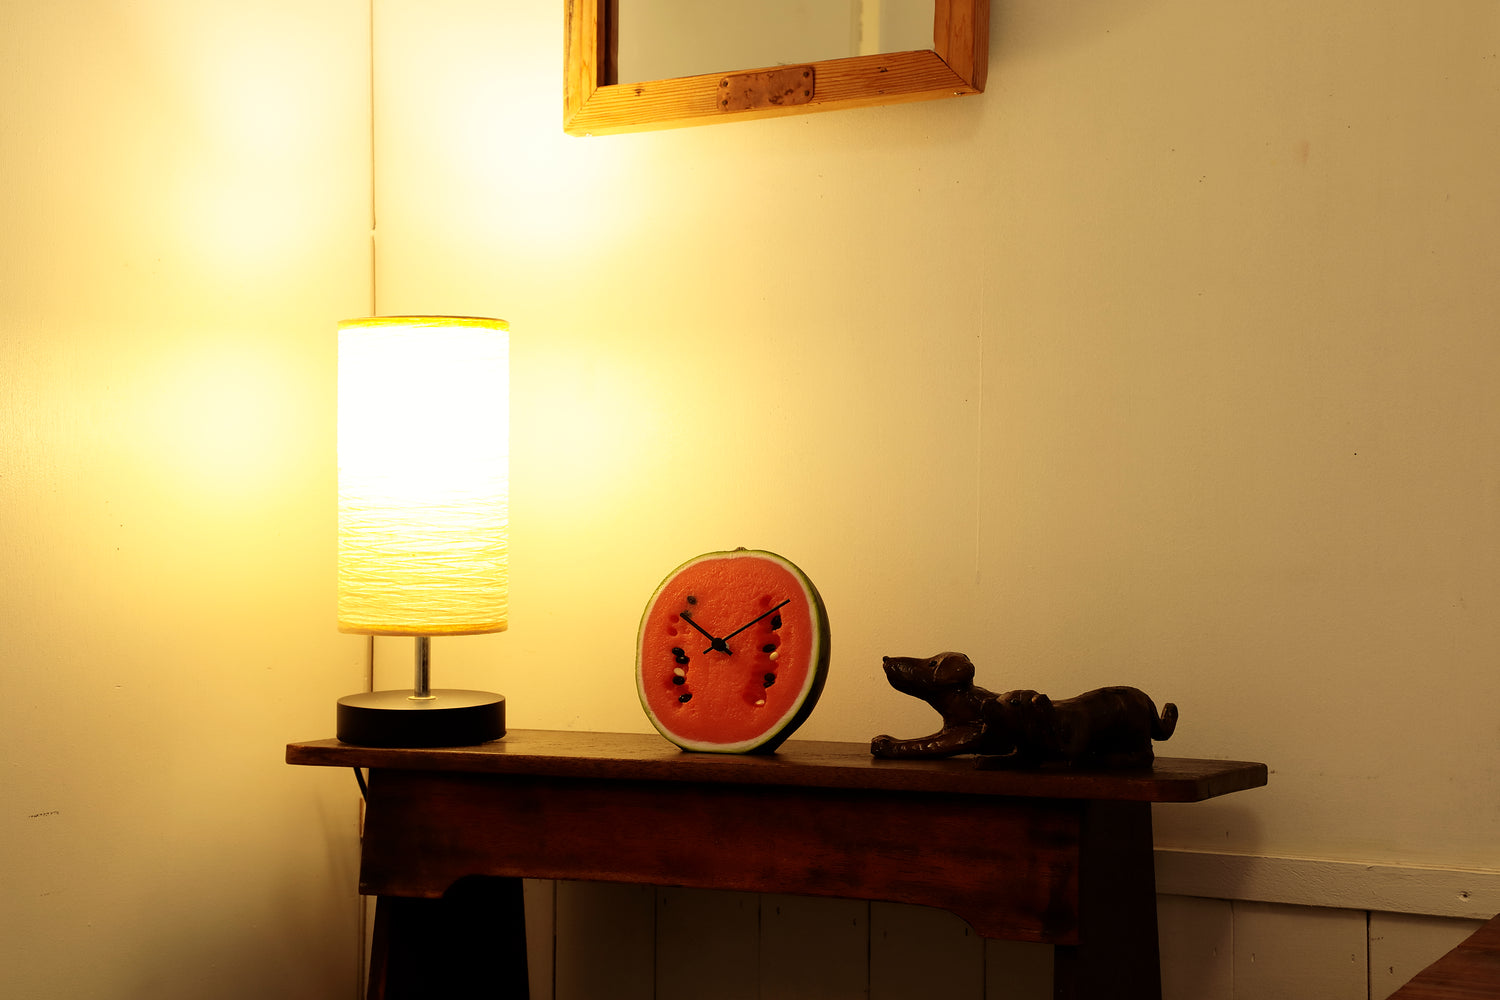 元祖食品サンプル屋「Replica Food Clock スイカ」の暗い部屋に置いたイメージ画像です。